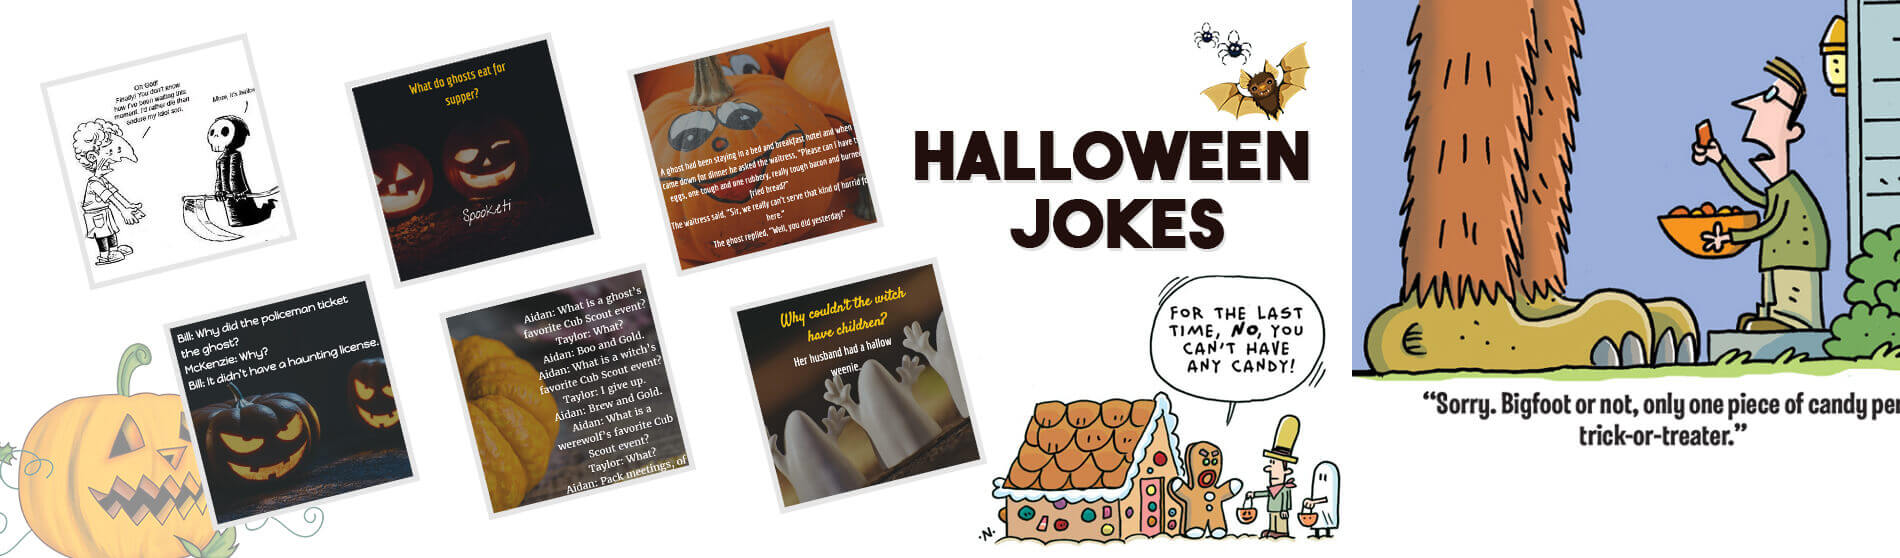 Glendale Halloween : Halloween-jokes